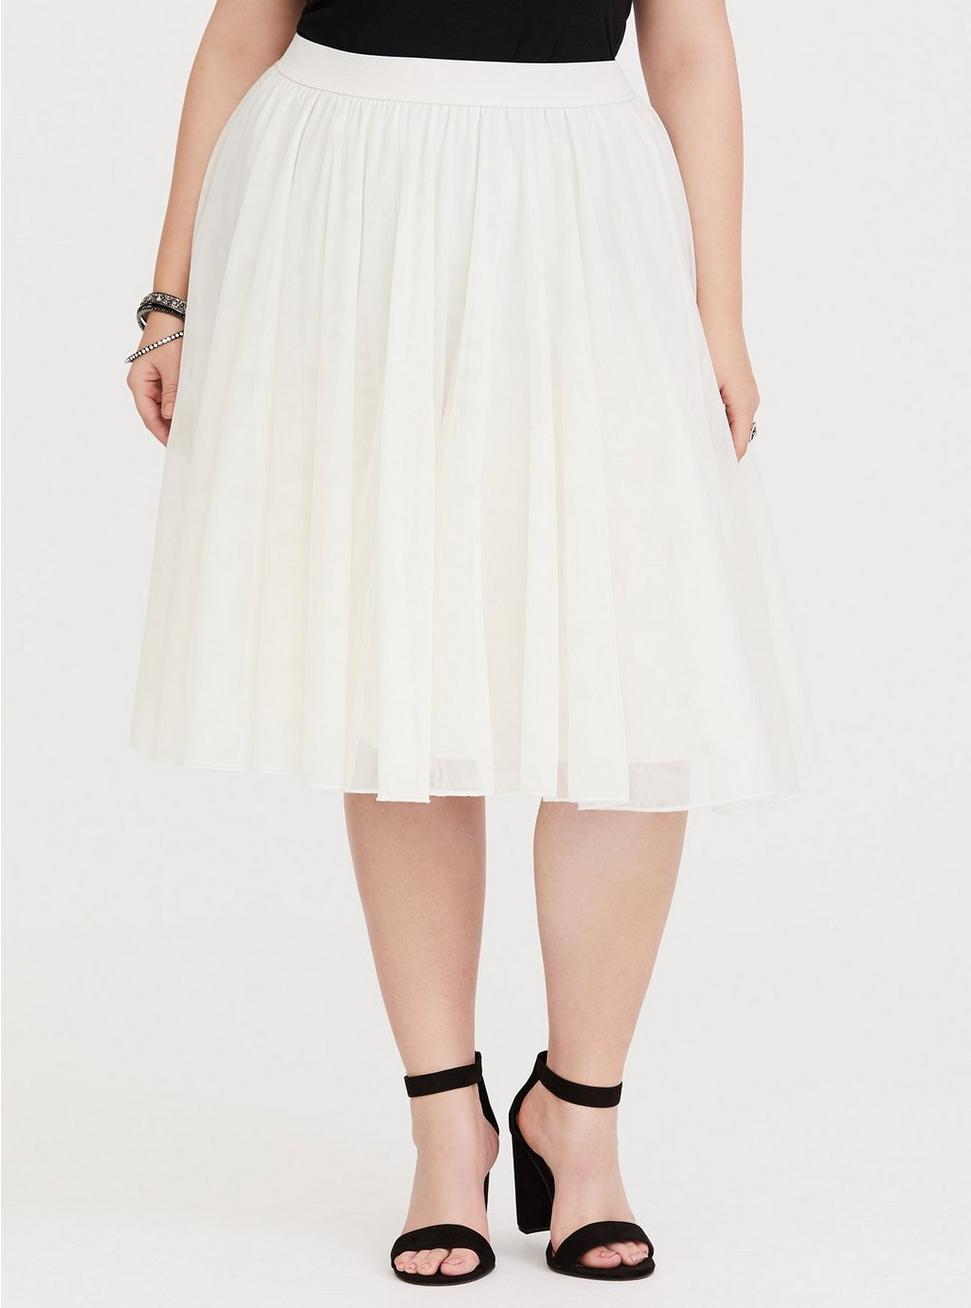 Plus Size - Ivory Tulle & Mesh Midi Skirt - Torrid